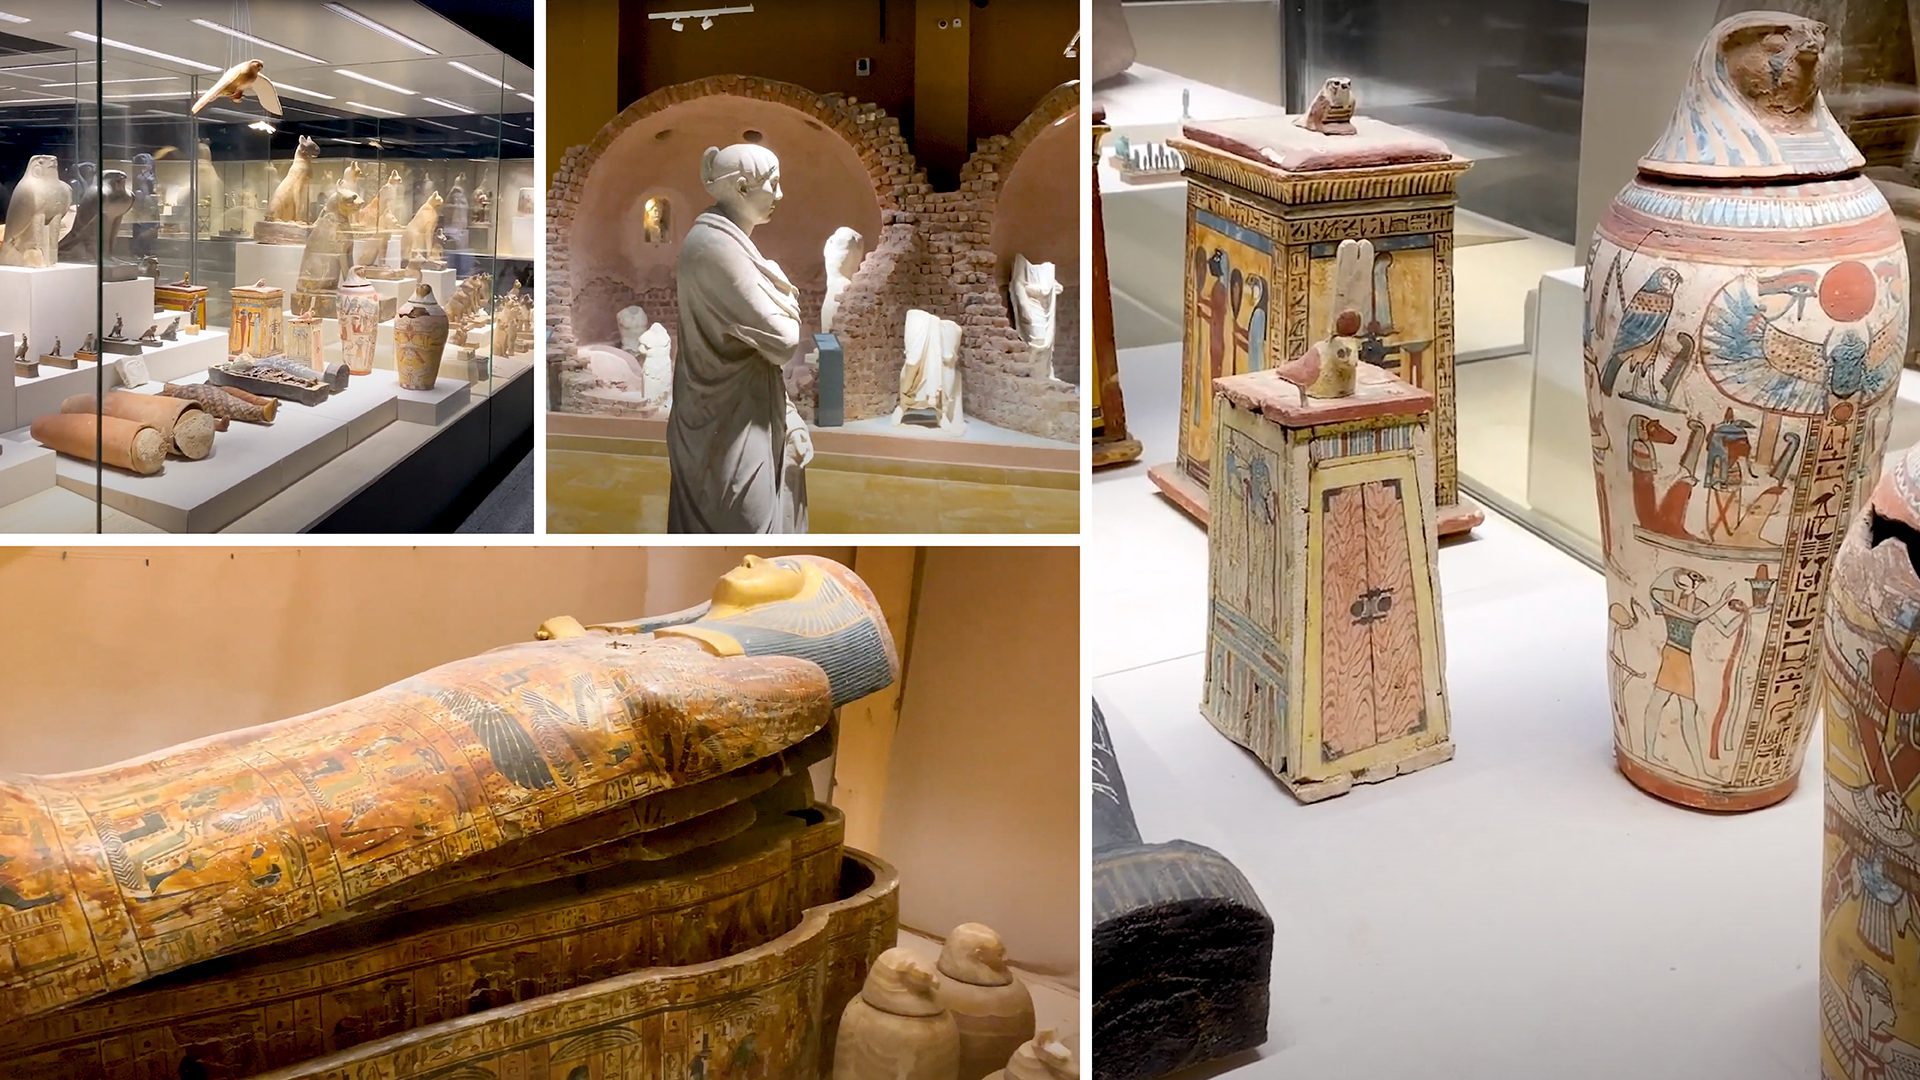 Pozoruhodná nová muzea k návštěvě v Egyptě 2021